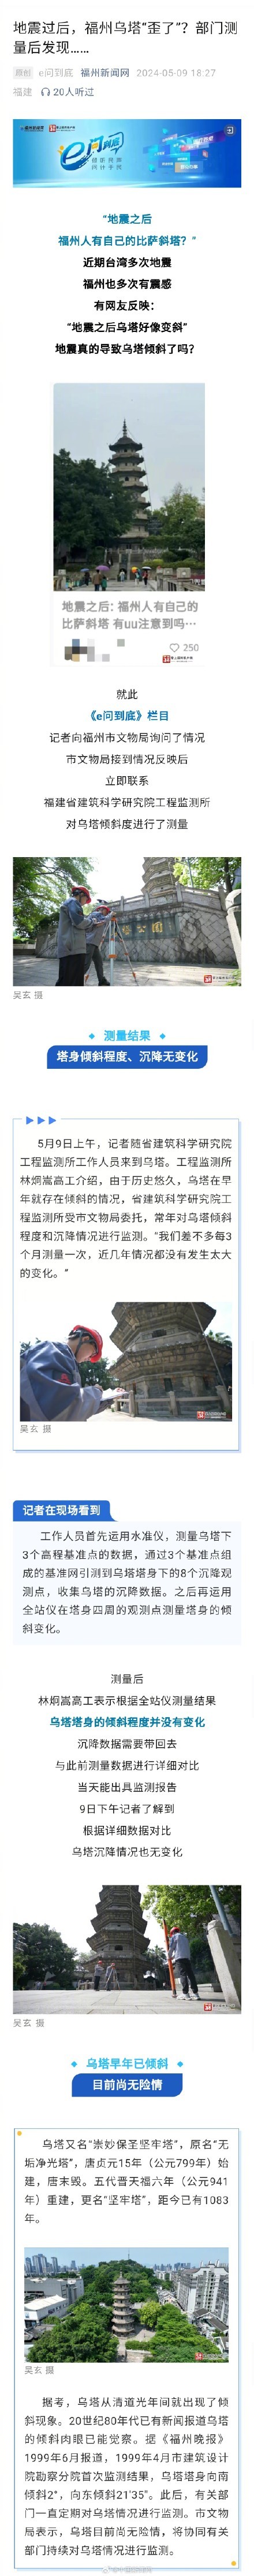 台湾地震把福州乌塔震歪了?谣言 古塔安然无恙